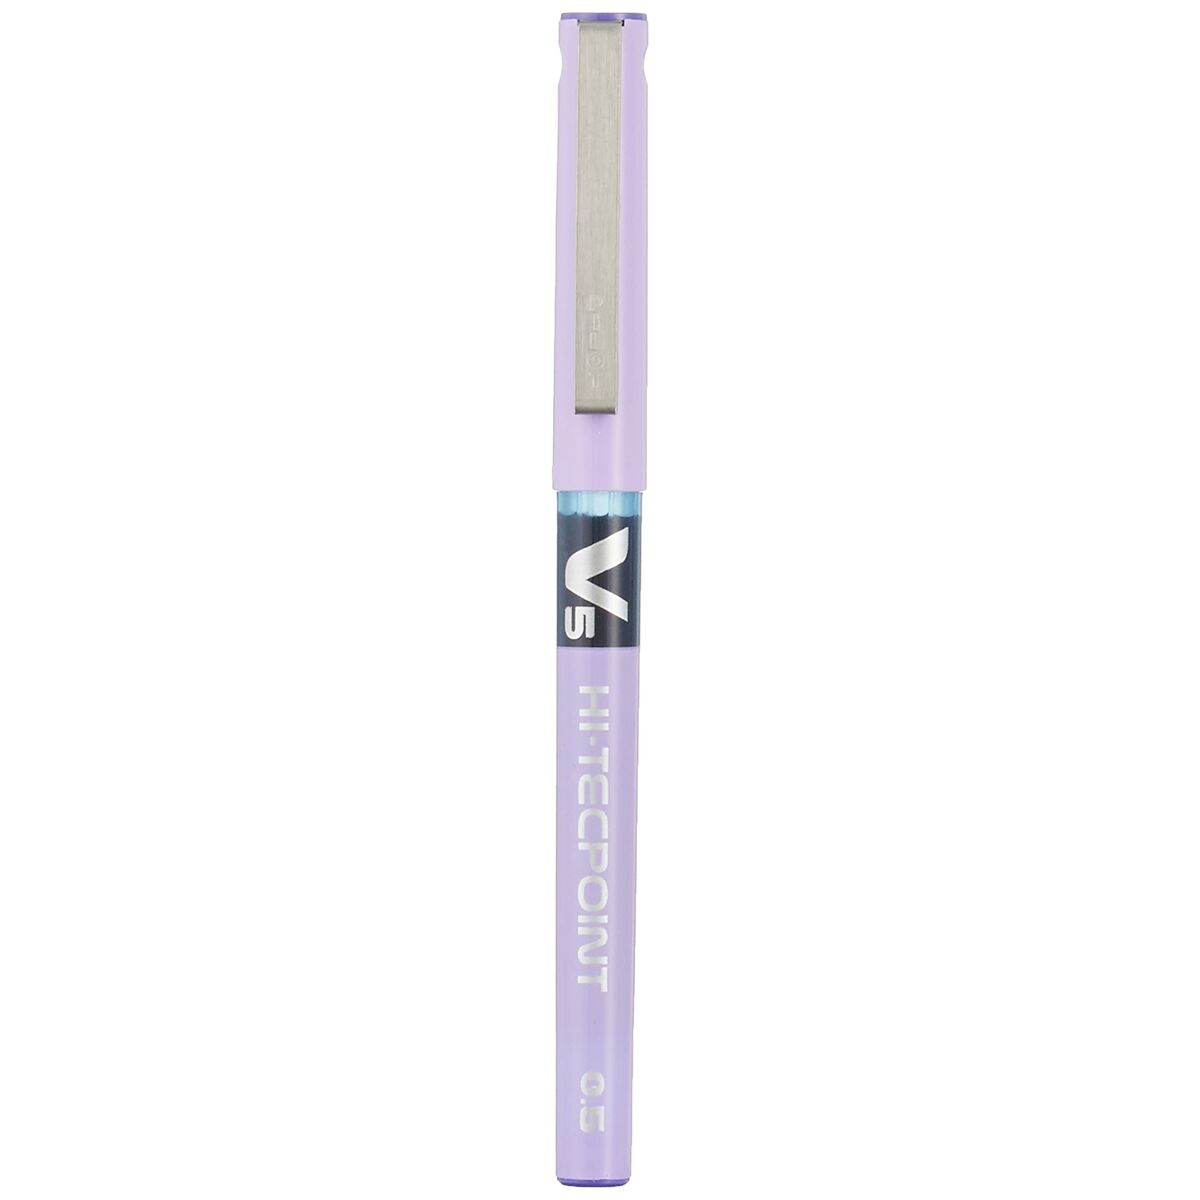 Penna för flytande bläck Pilot V-5 Hi-Tecpoint Violett 0,3 mm (12 antal)-Kontor och Kontorsmaterial, Kulspetspennor, pennor och skrivverktyg-Pilot-peaceofhome.se